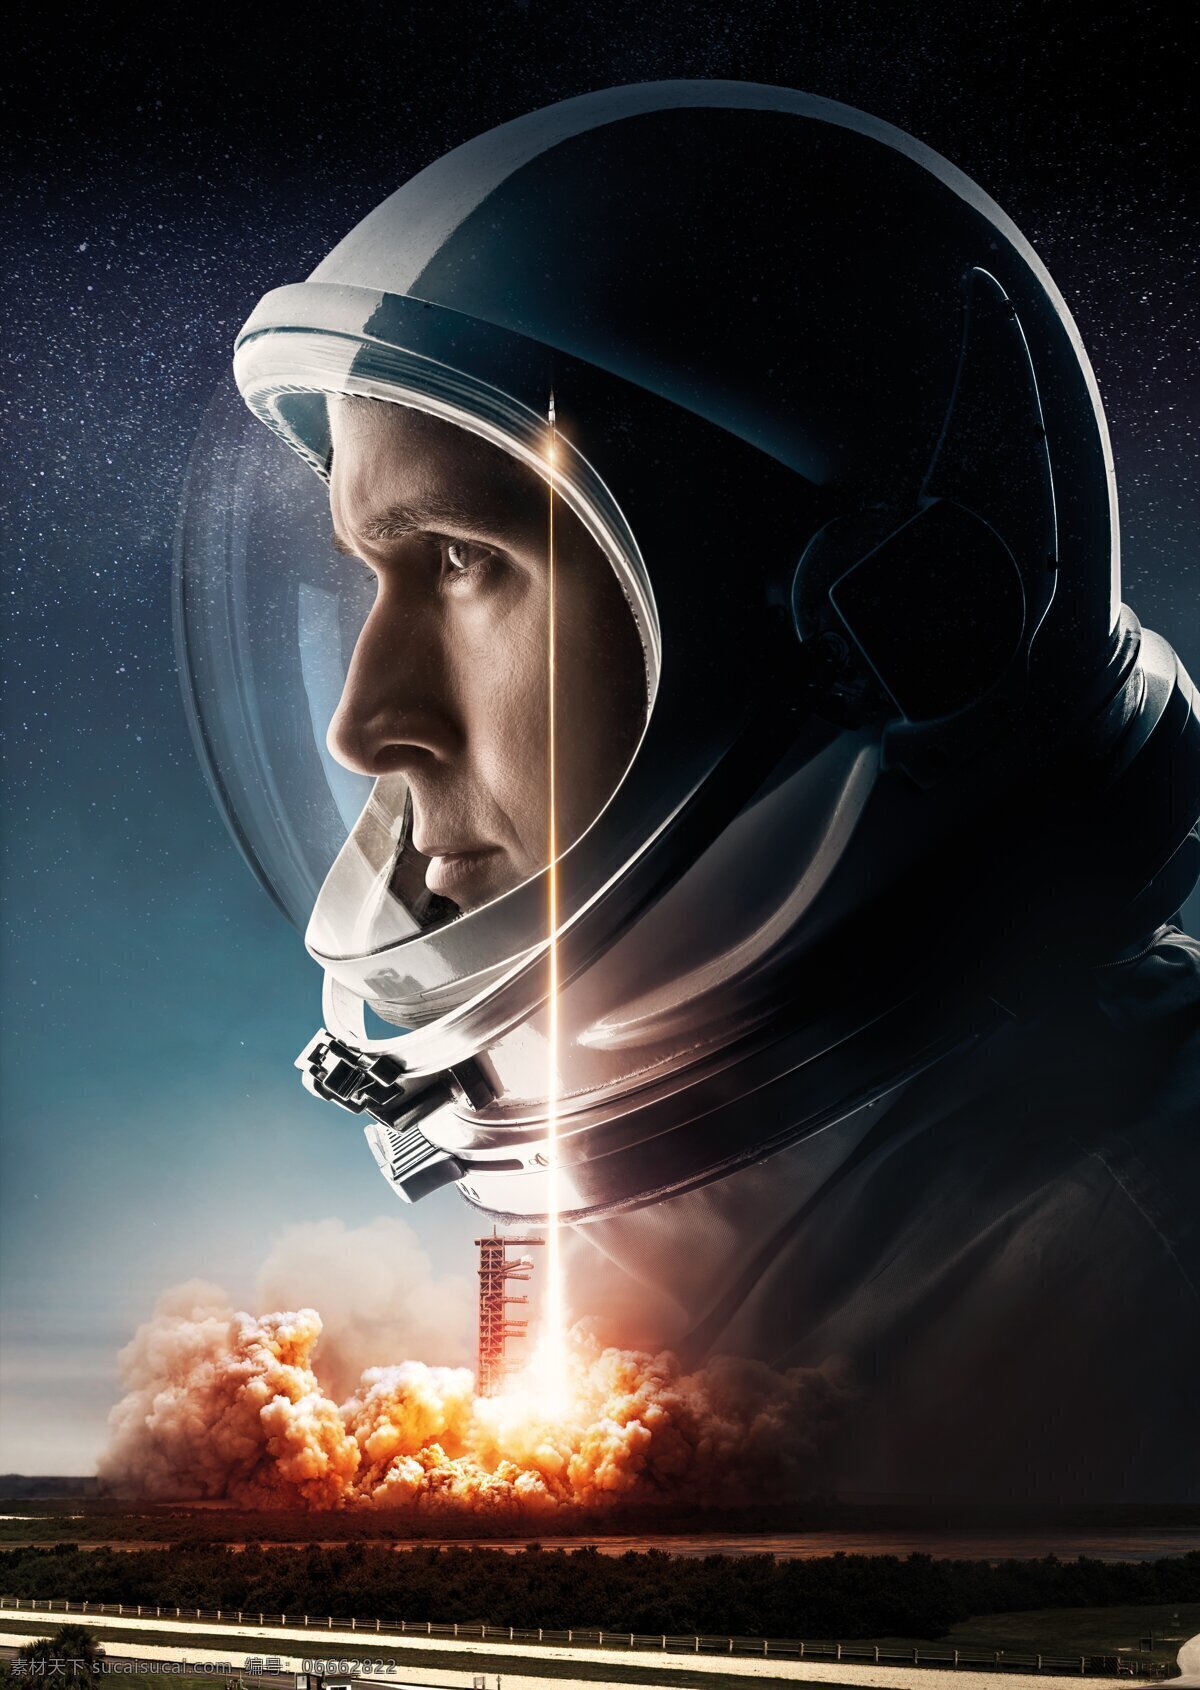 登月第一人 第一人 登月先锋 阿姆斯特朗 宇航员 登月者 传记电影 传记片 电影海报 2019 movie material 文化艺术 影视娱乐